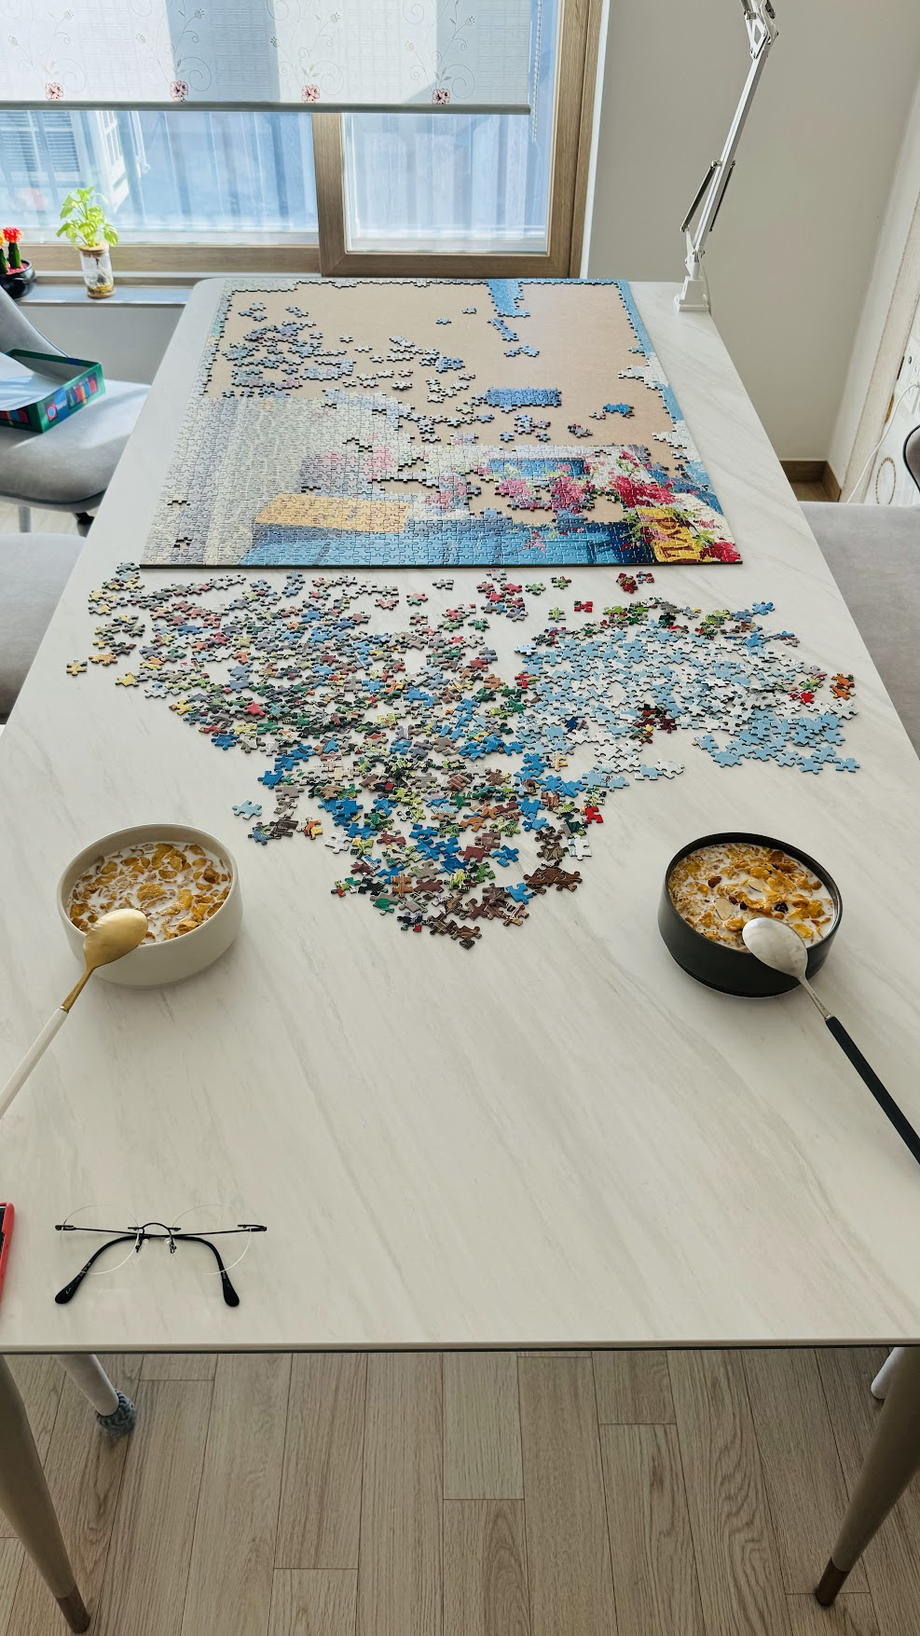 Foto del rompecabezas y los cereales en la mesa